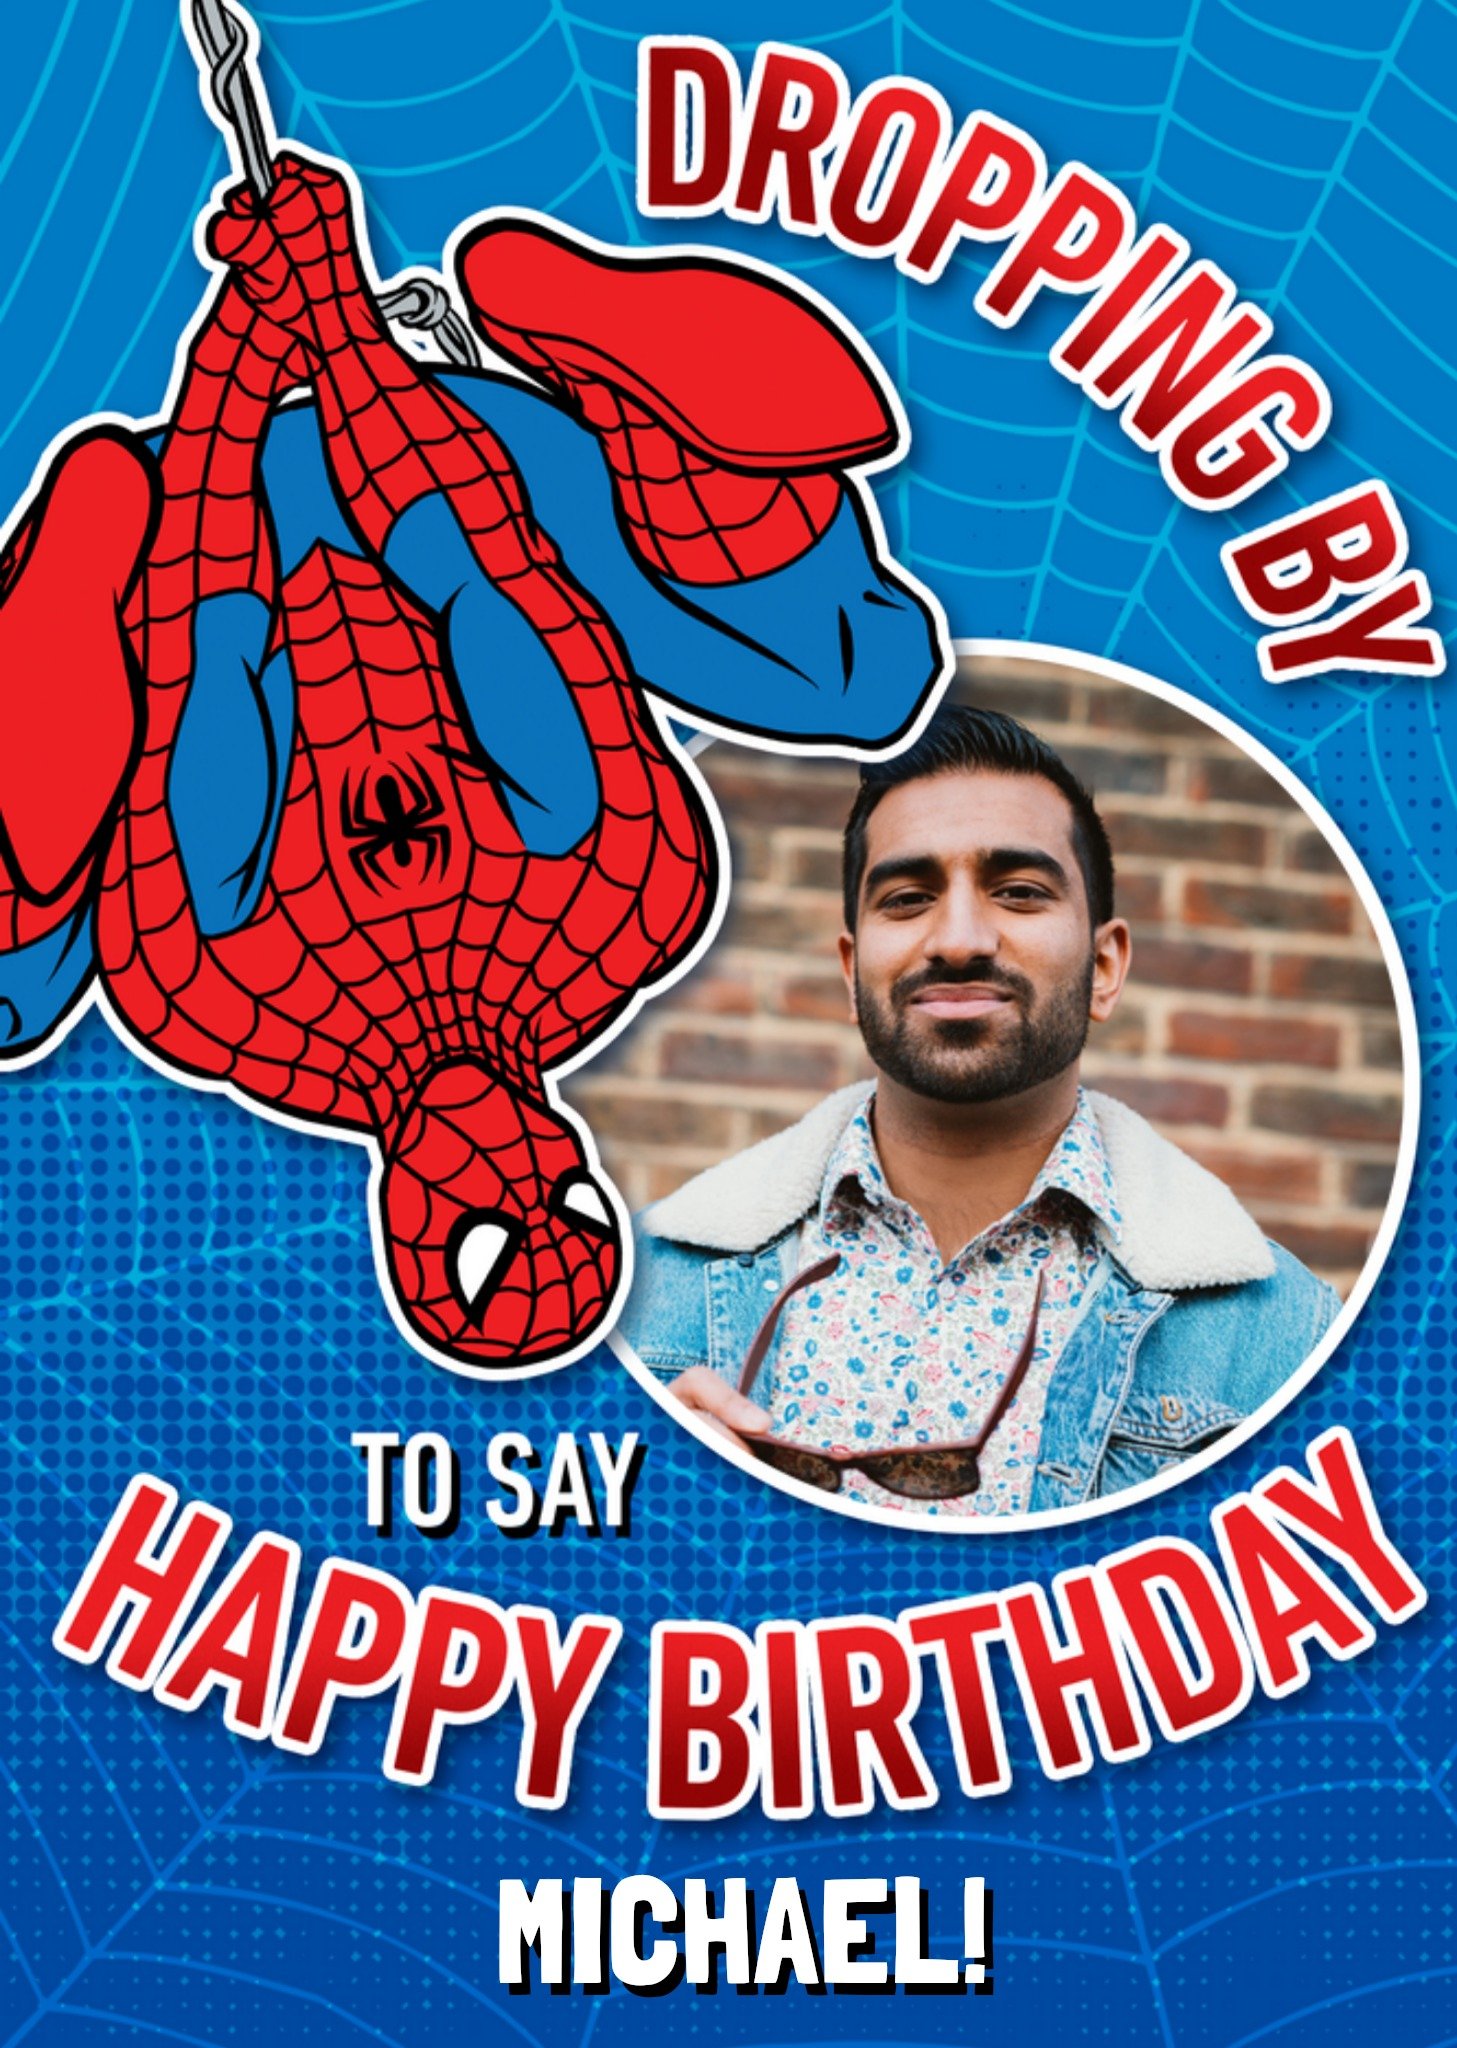 Spiderman - Verjaardagskaart - Dropping by